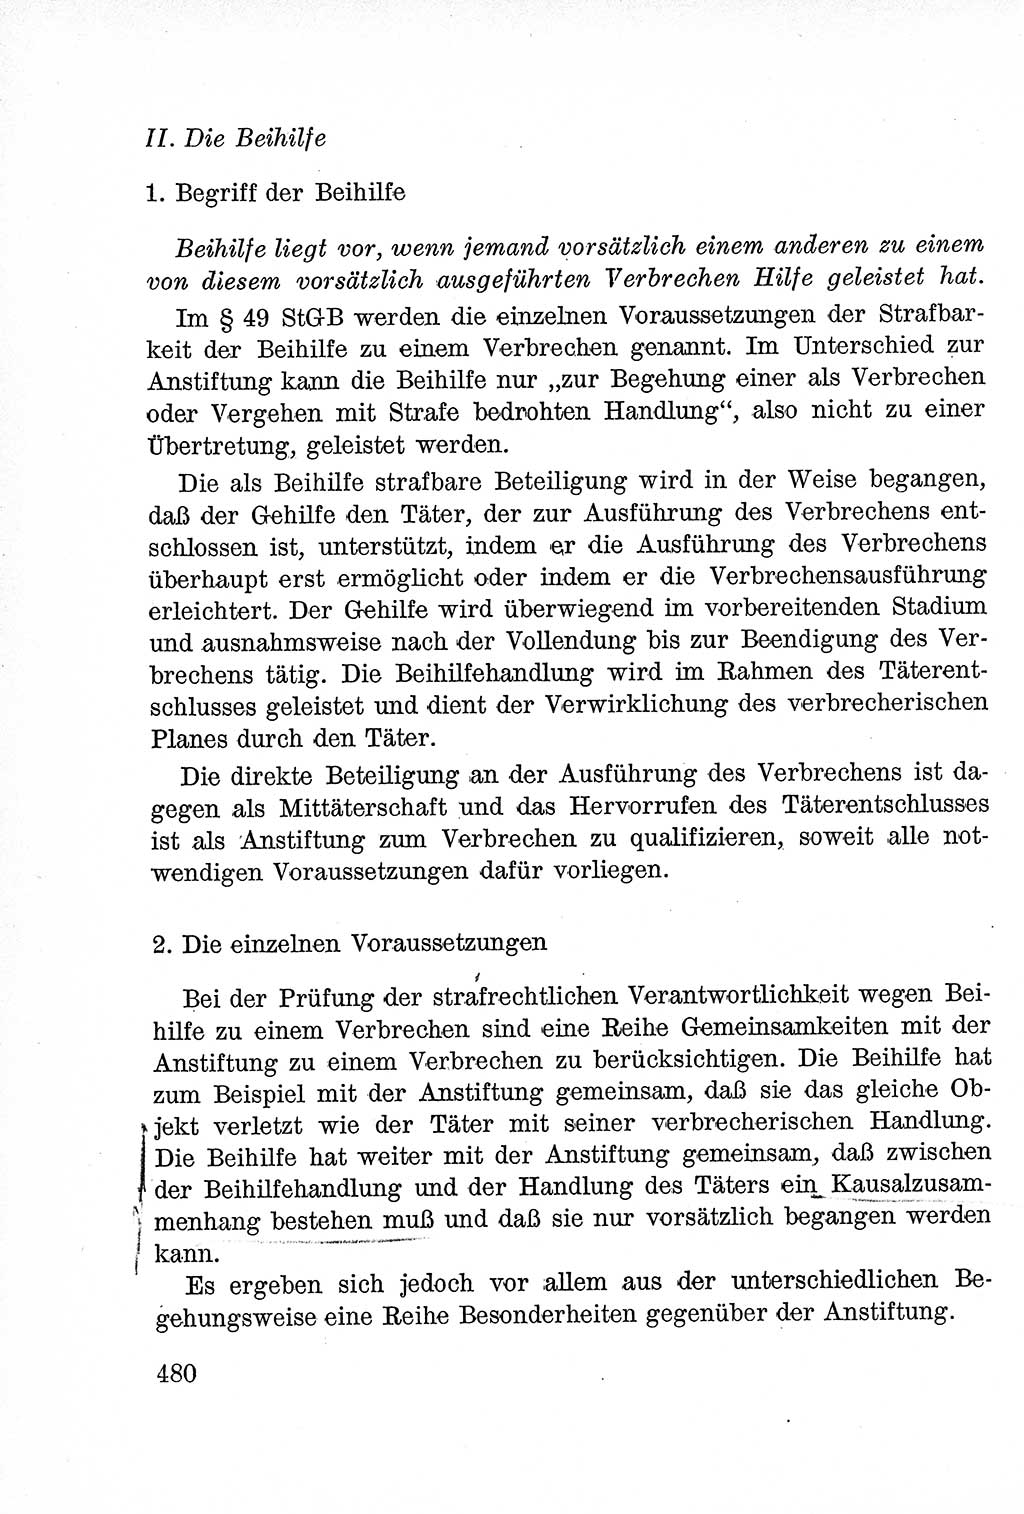 Lehrbuch des Strafrechts der Deutschen Demokratischen Republik (DDR), Allgemeiner Teil 1957, Seite 480 (Lb. Strafr. DDR AT 1957, S. 480)